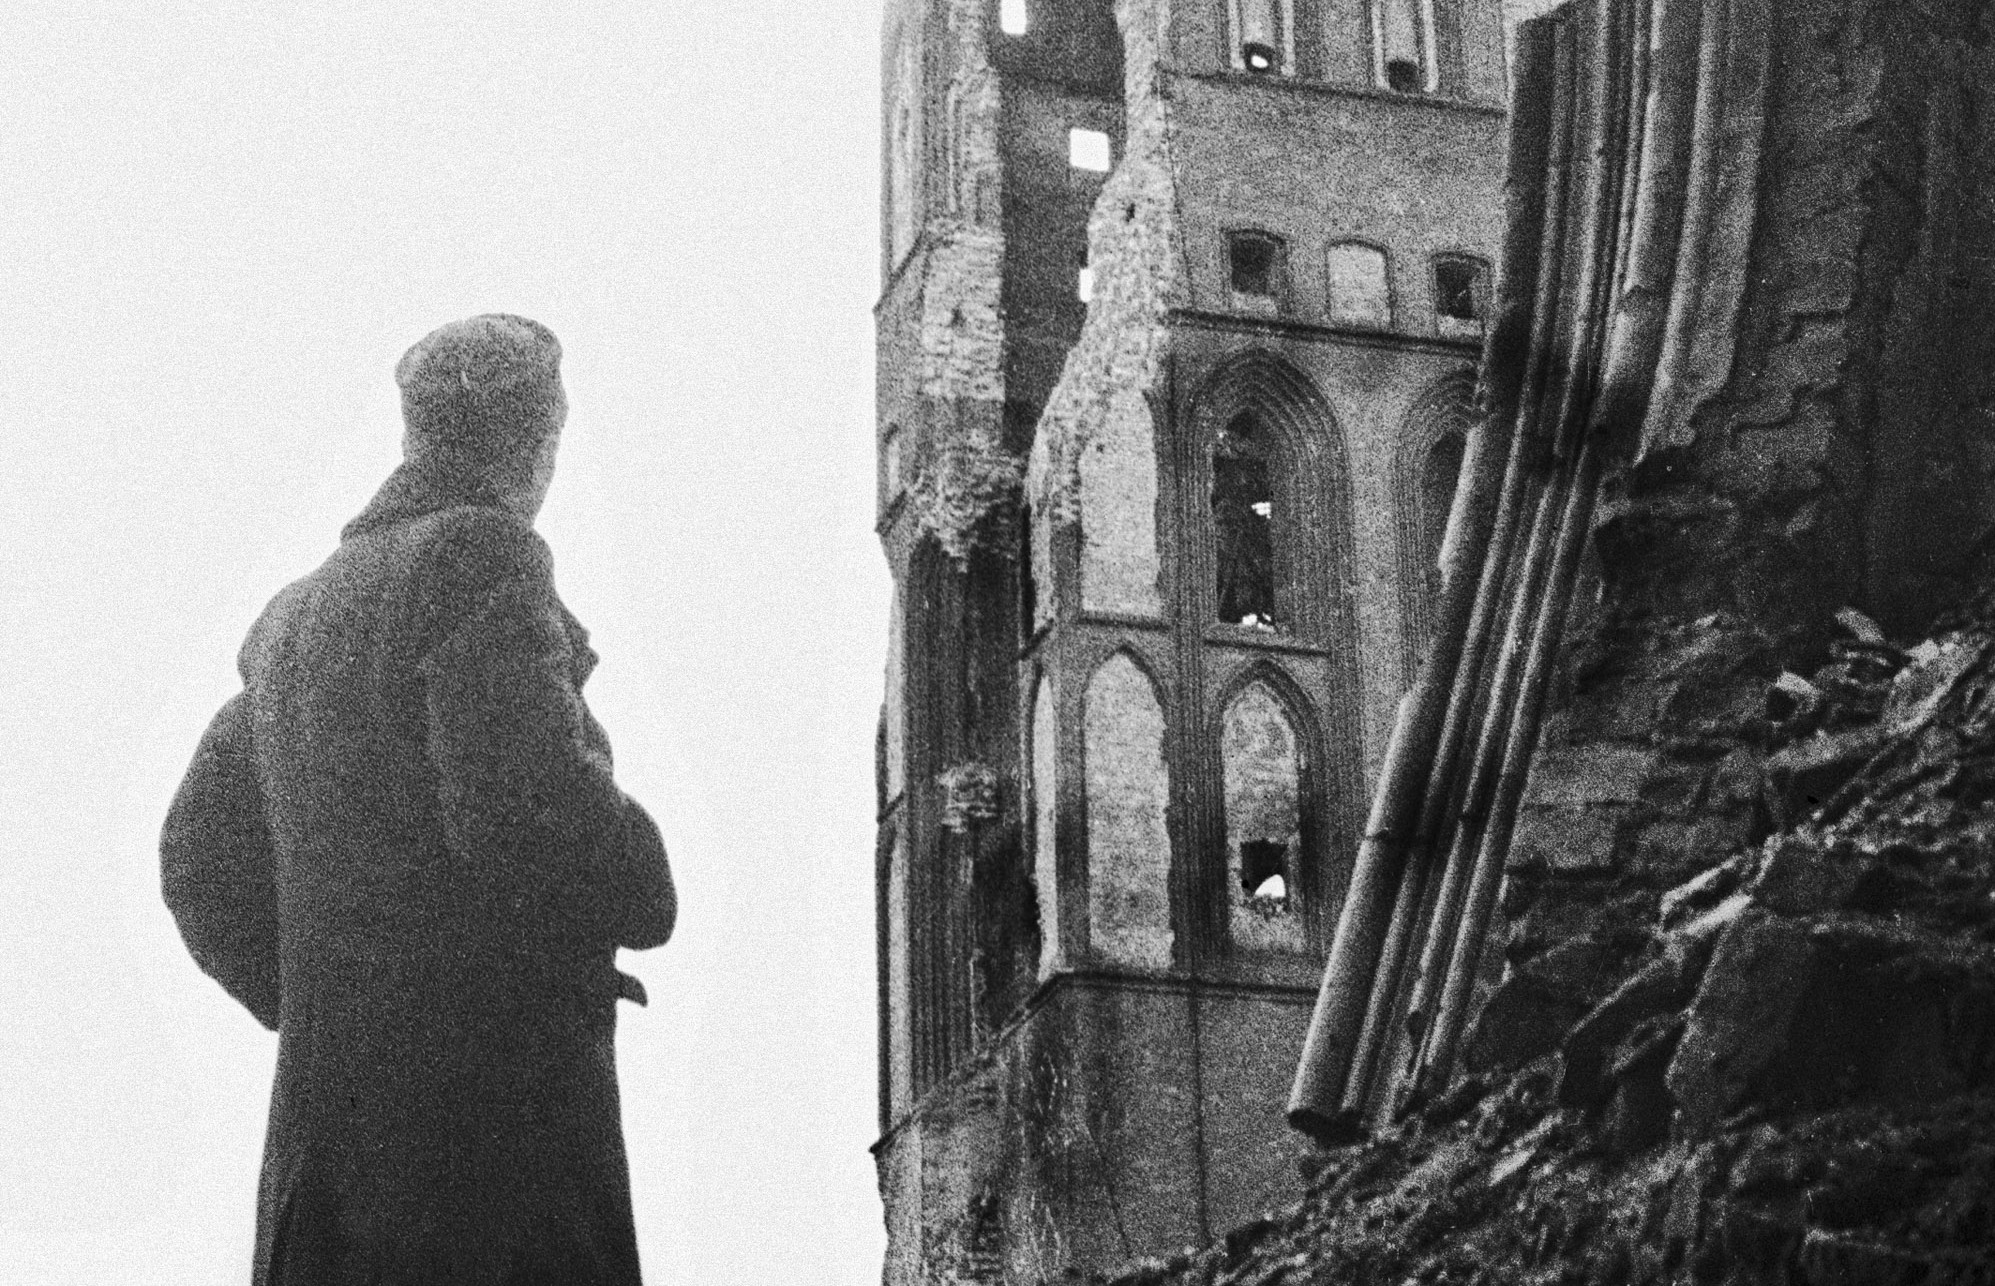 Кенигсберг: идеальный штурм. 75 лет назад, 9 апреля 1945 года, советские войска захватили столицу Восточной Пруссии